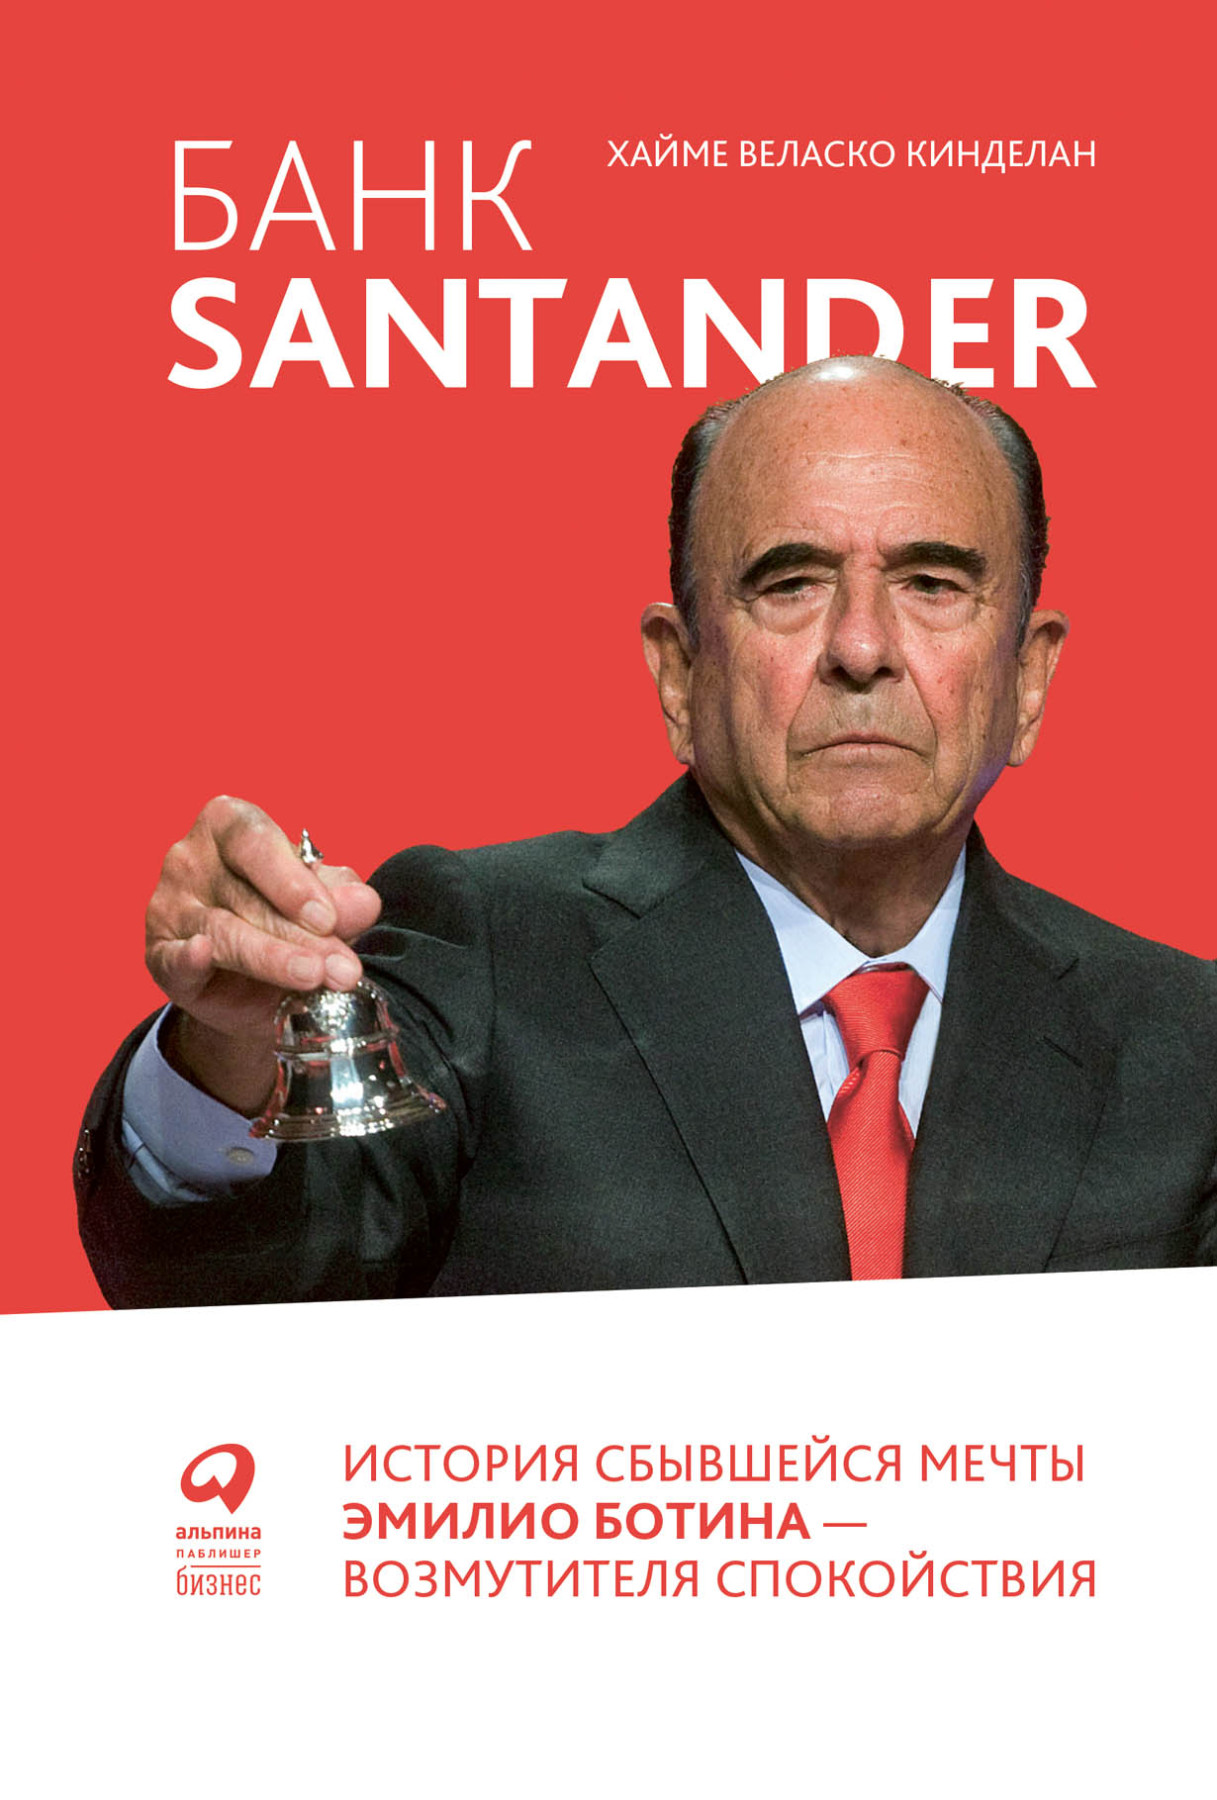 Банк Santander обложка.